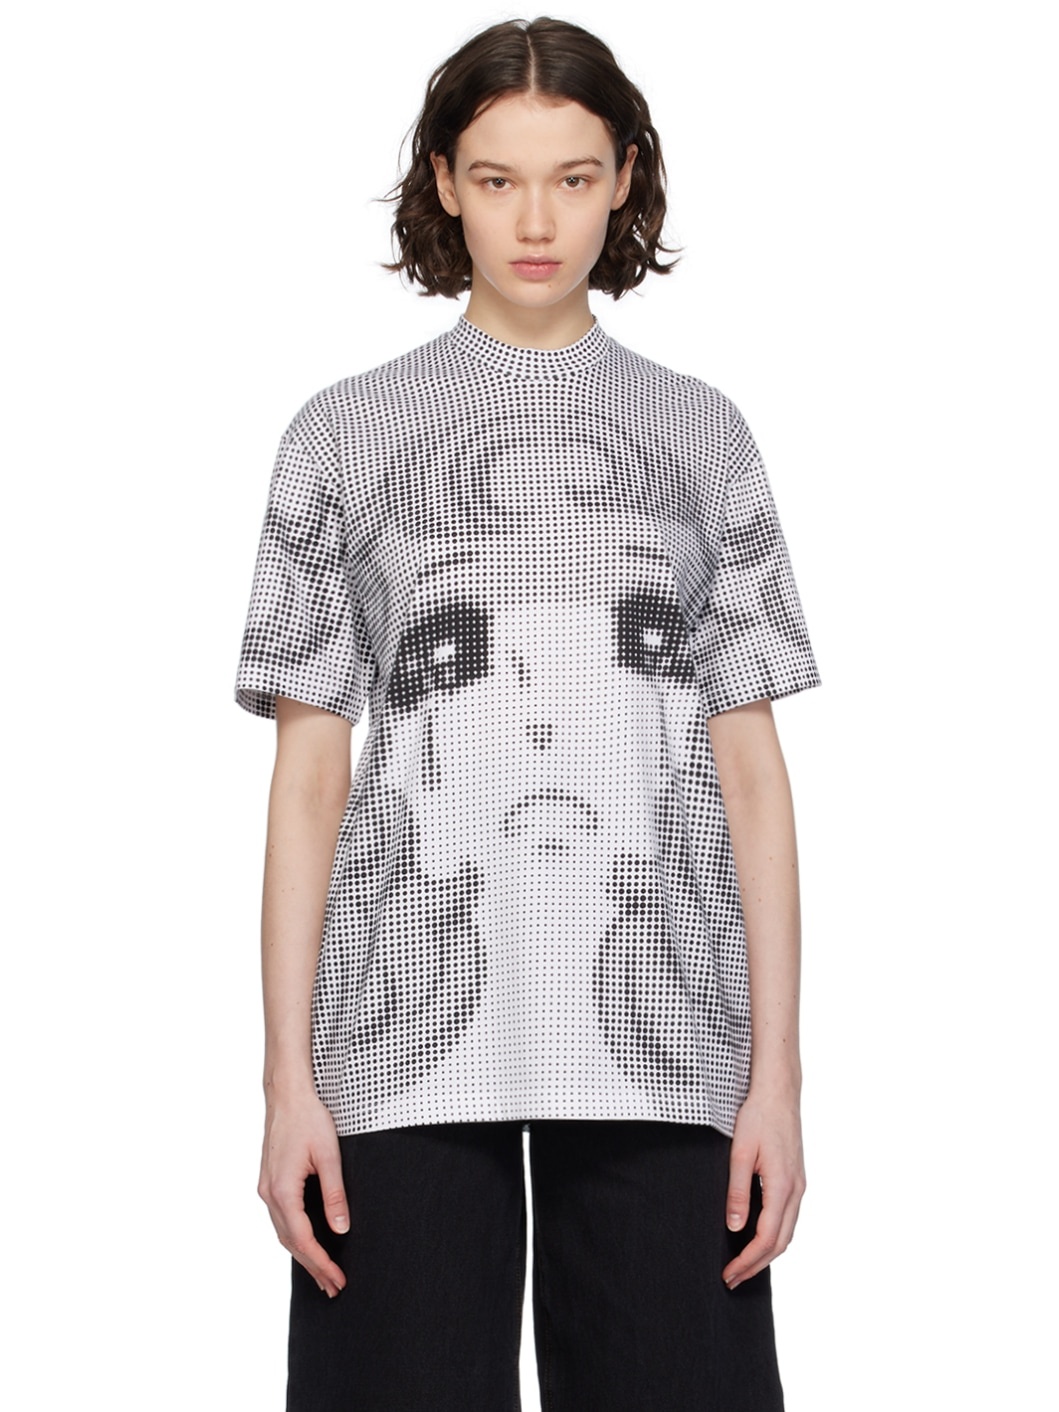 Black & White Pixel Crying Girl T-Shirt - 1